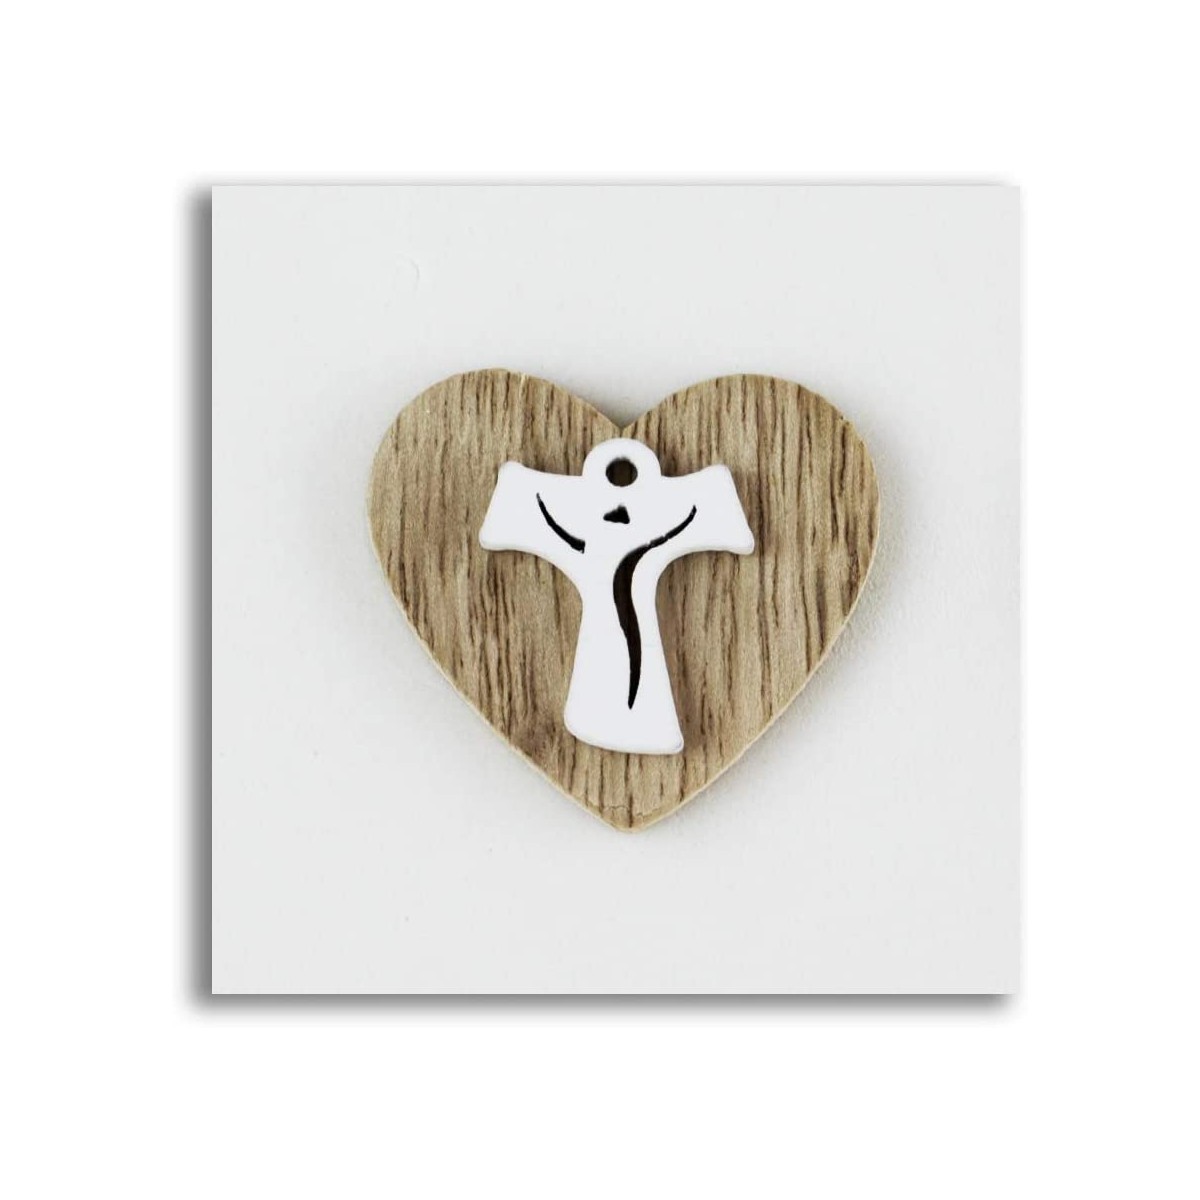 Kit 12 Calamite Magnete con cuore e Croce Tau, in legno naturale